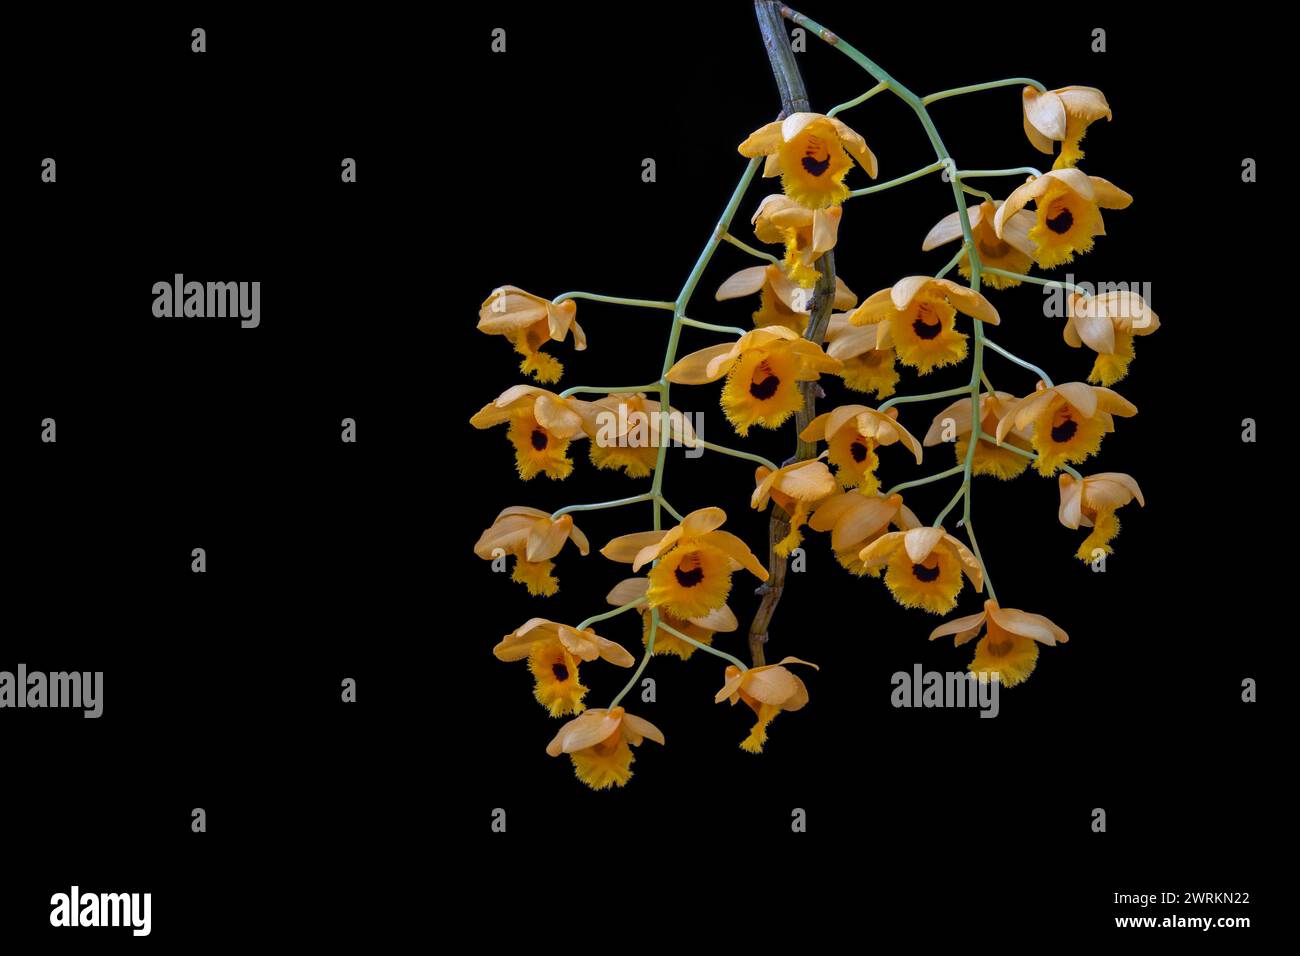 Vue rapprochée de l'espèce d'orchidée tropicale en fleurs dendrobium fimbriatum avec des grappes de fleurs jaunes dorées et noires isolées sur fond noir Banque D'Images